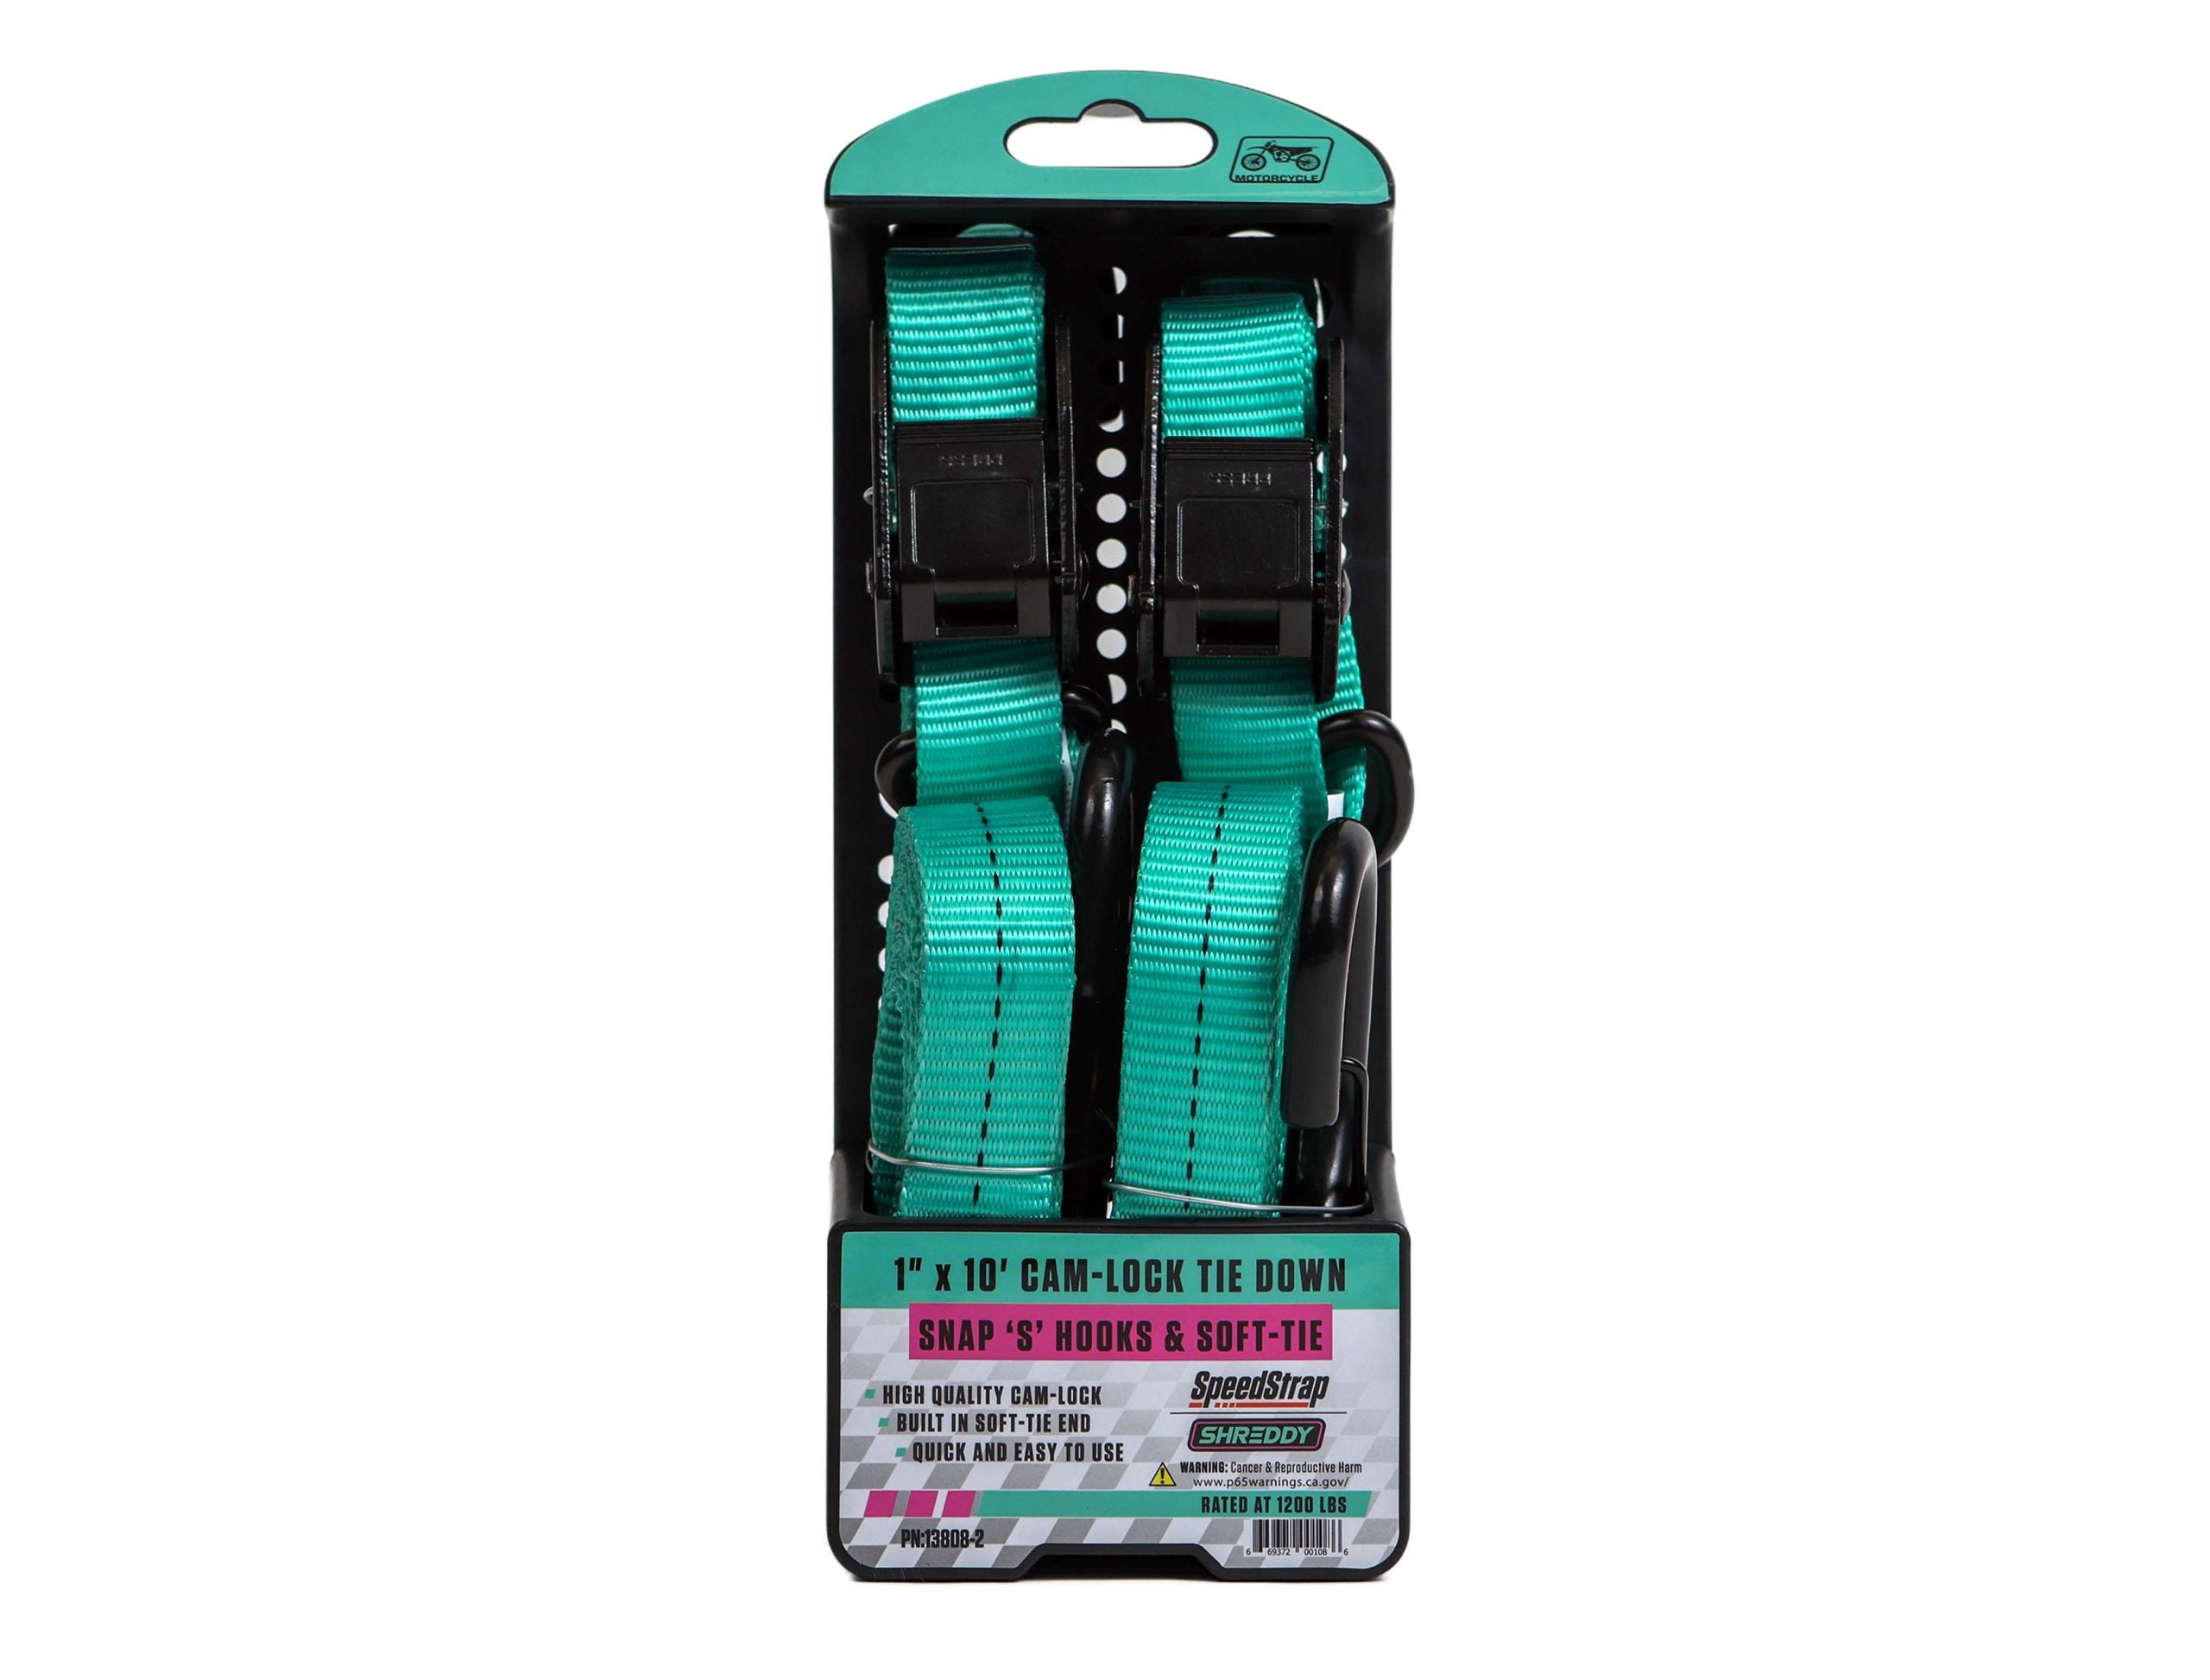 Shreddy 1" x 10' Cam-Lock Tie Down w/ Snap S-Hooks & Soft-Tie (2 Pack) Teal SpeedStrap package